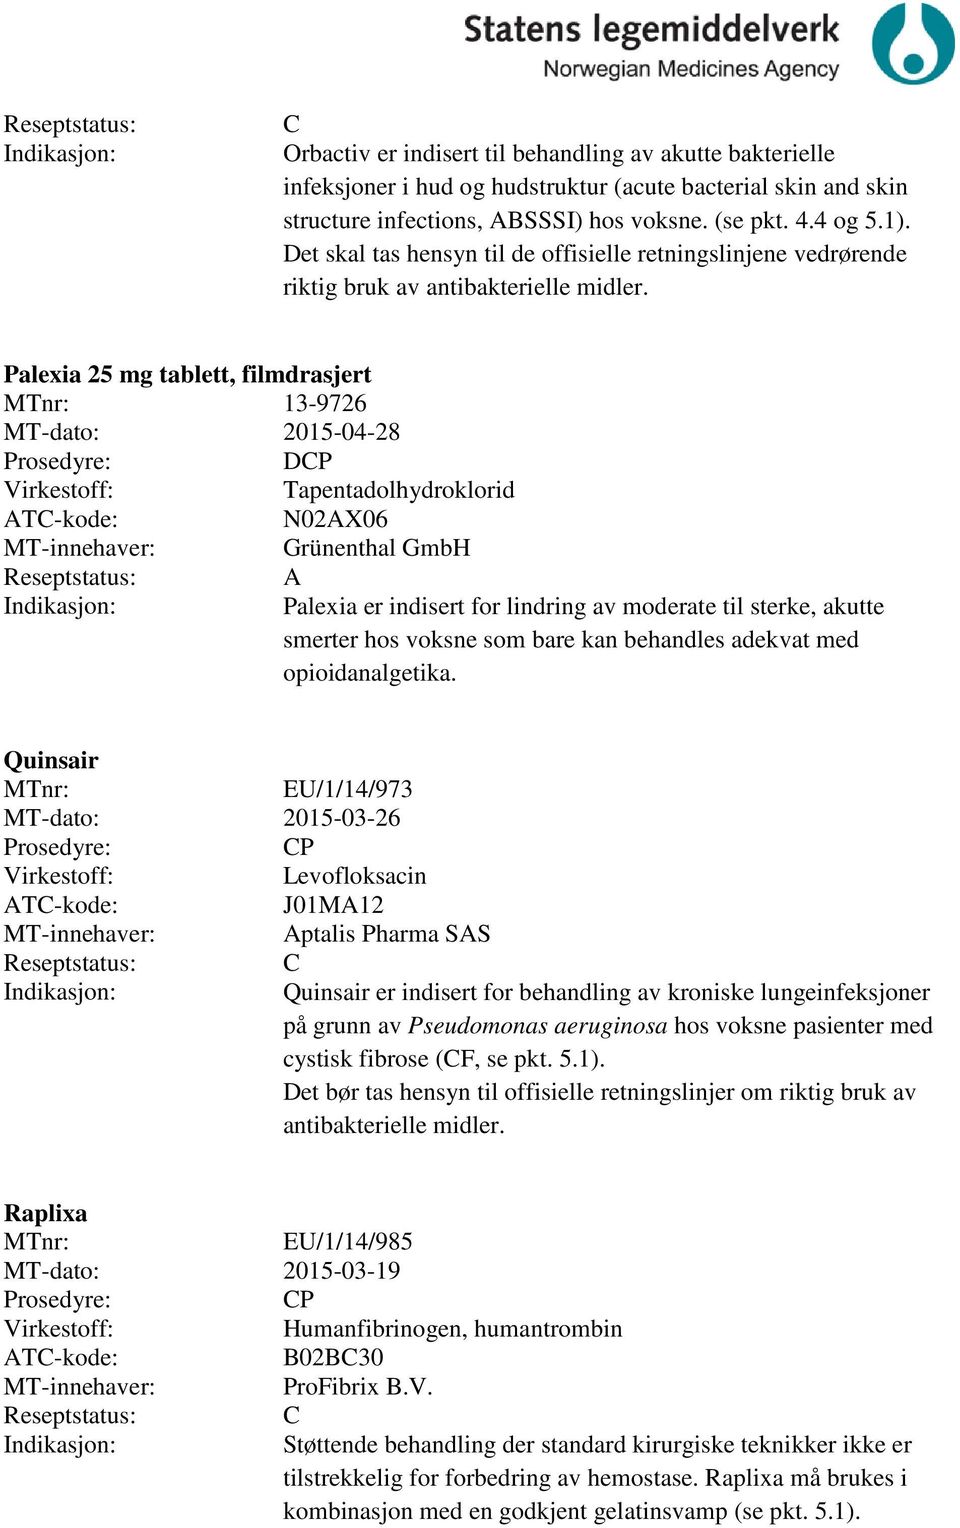 Palexia 25 mg tablett, filmdrasjert 13-9726 MT-dato: 2015-04-28 DP Tapentadolhydroklorid N02AX06 Grünenthal GmbH A Palexia er indisert for lindring av moderate til sterke, akutte smerter hos voksne